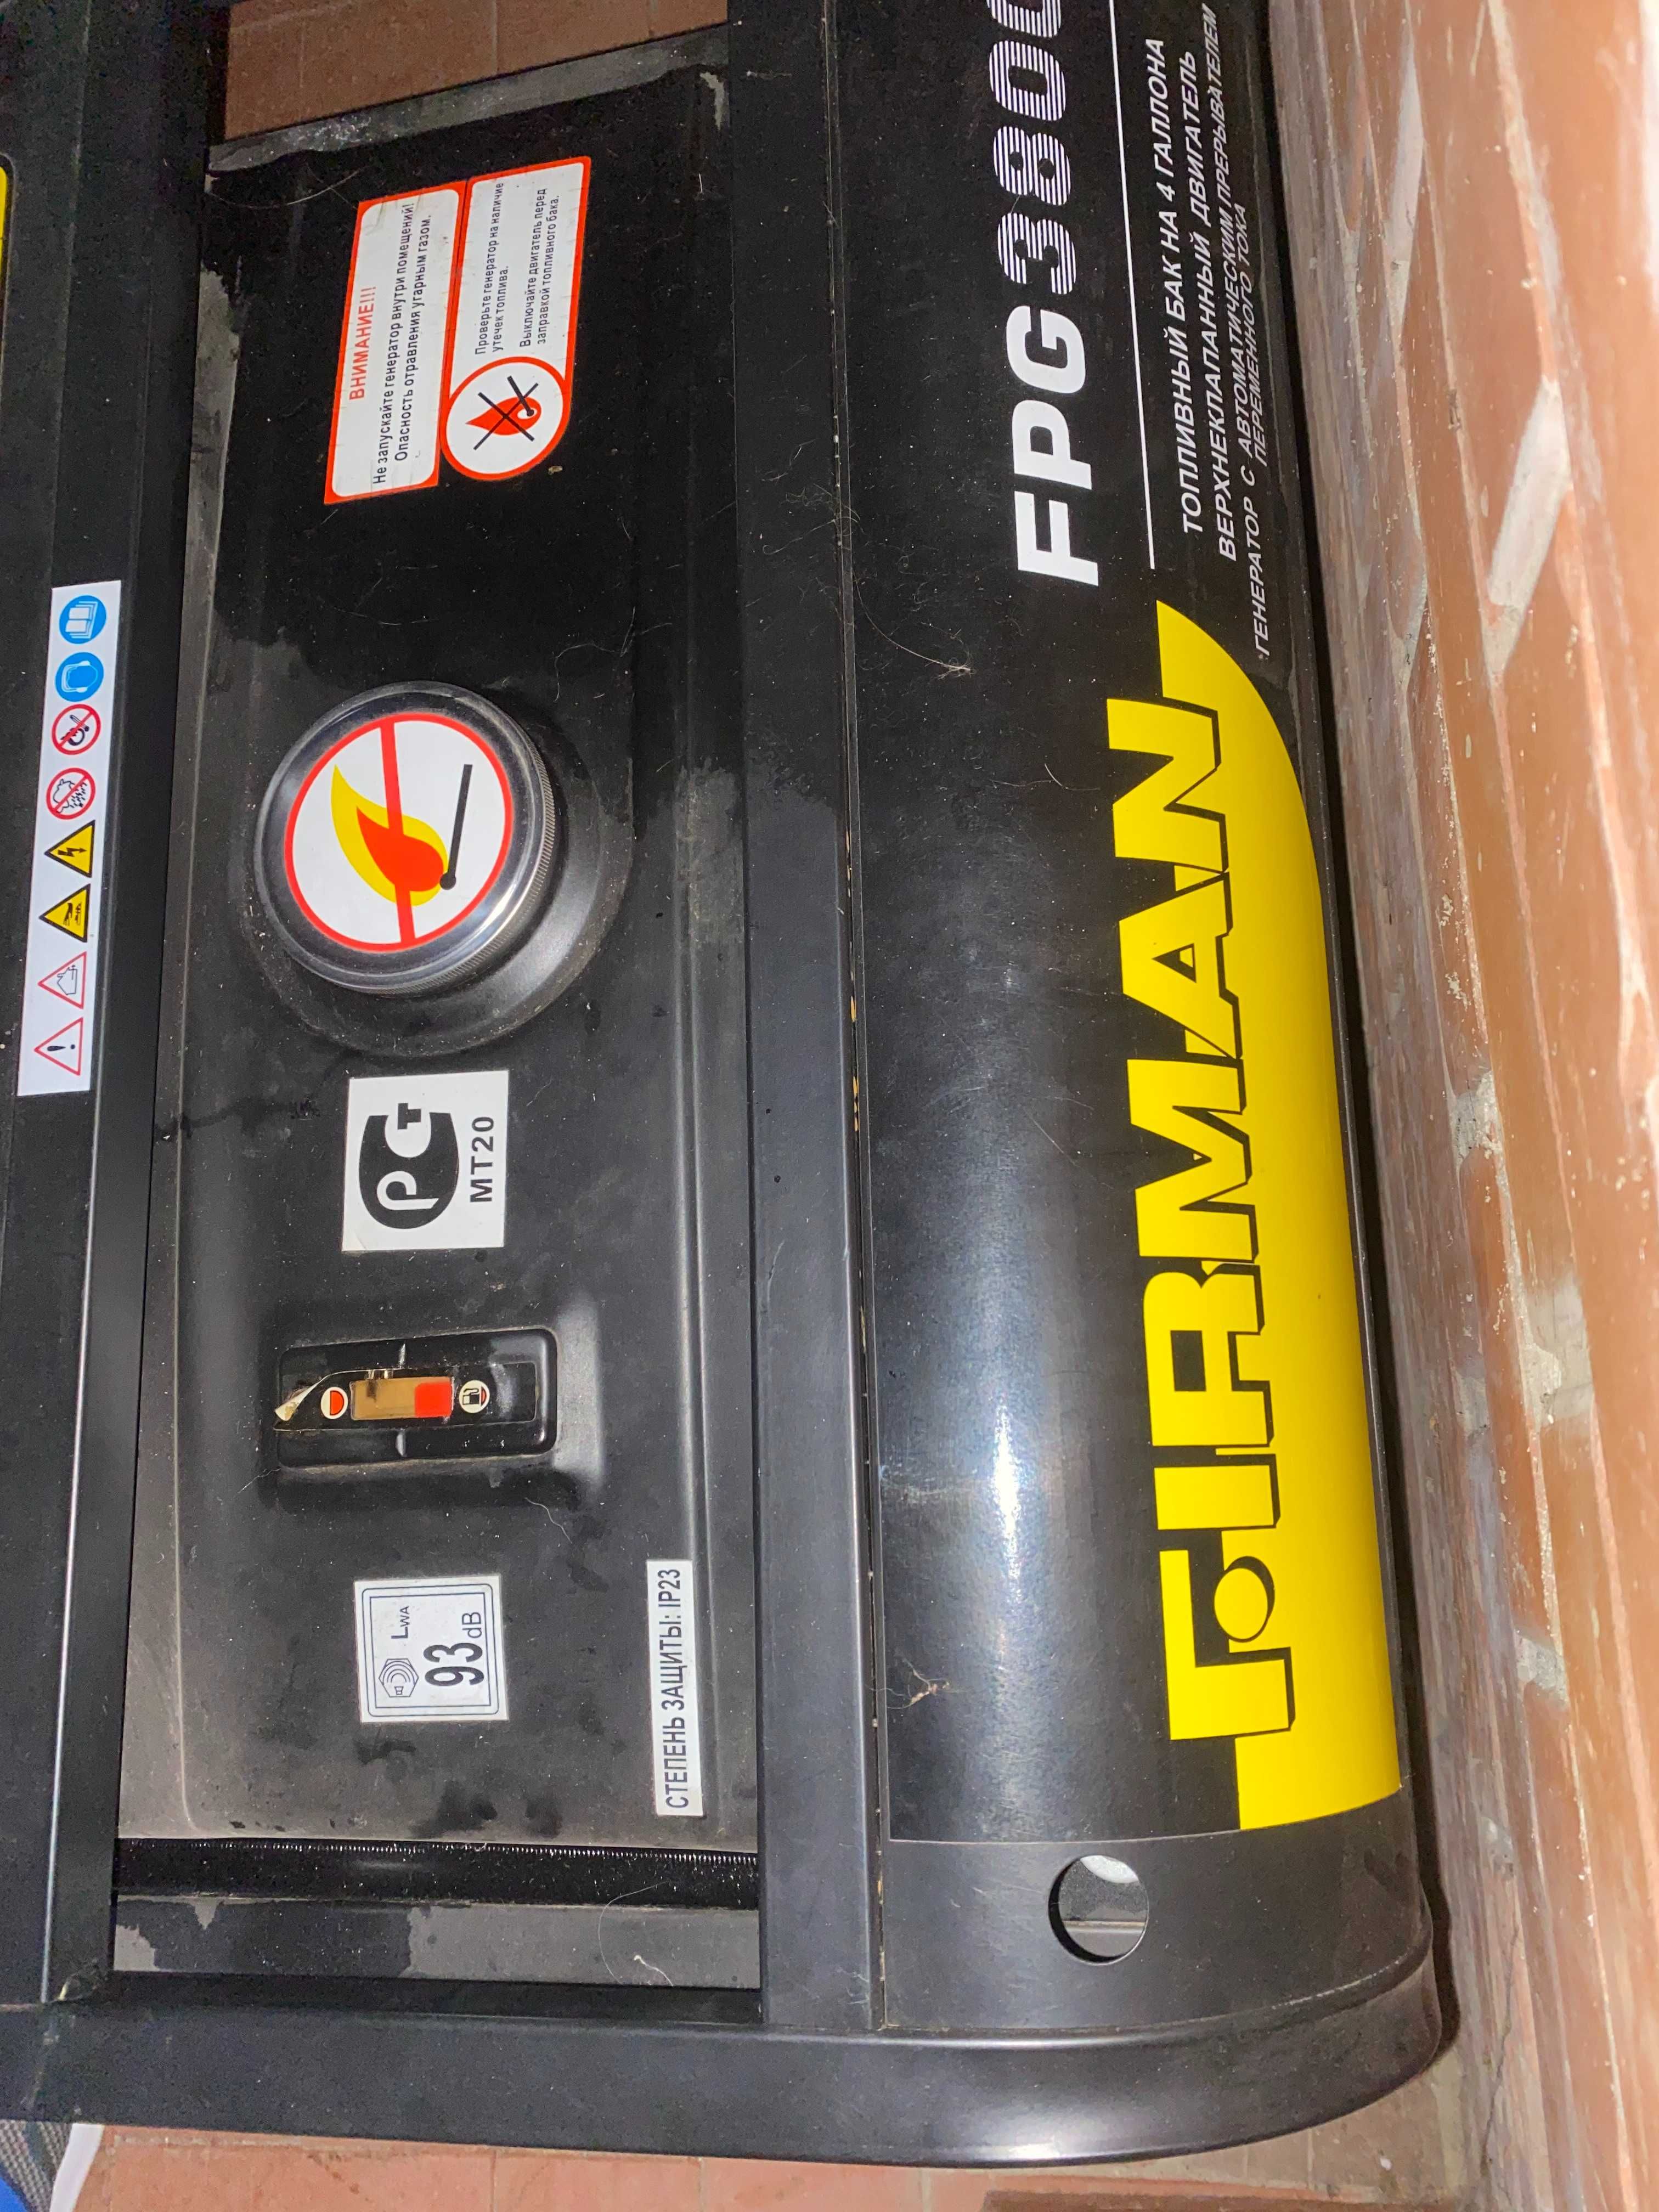 Бензиновый генератор FIRMAN FPG 3800